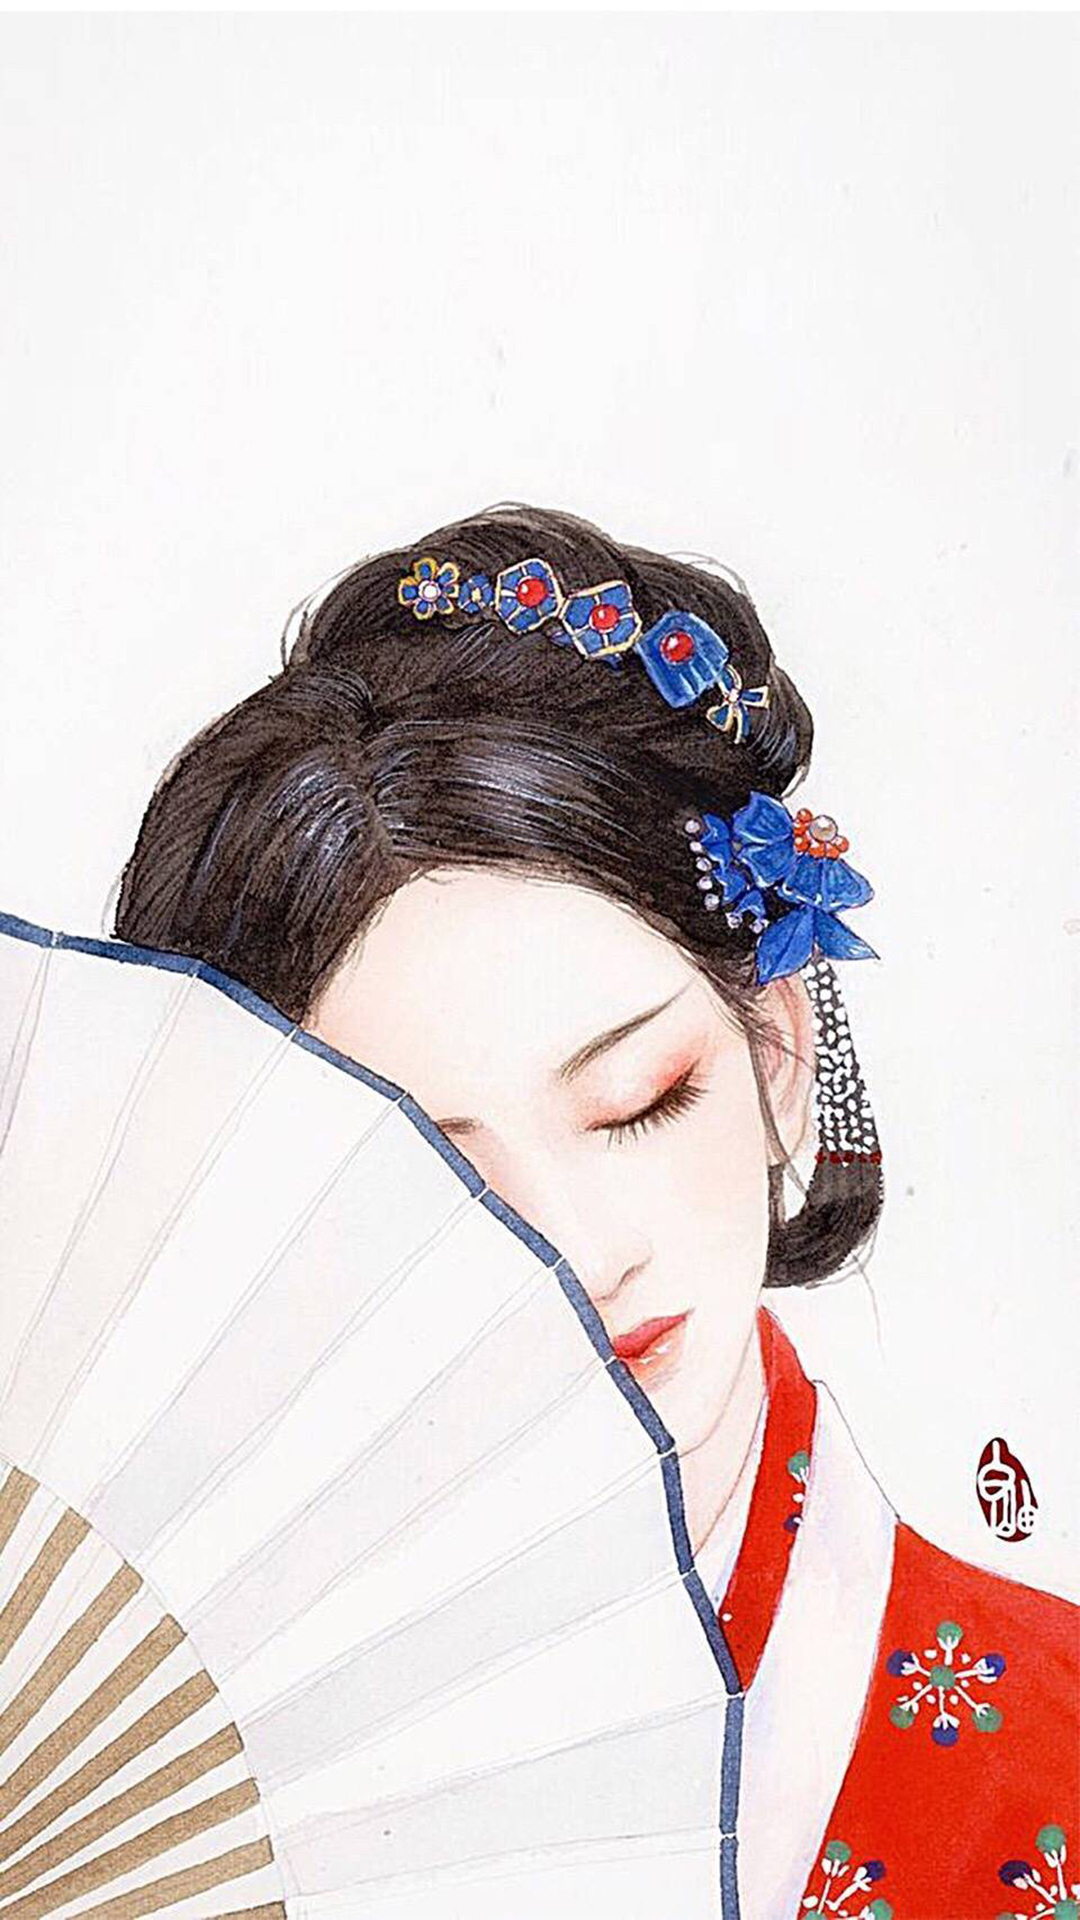 唯美古典中国风美女手绘高清手机壁纸风格手机壁纸下载美桌